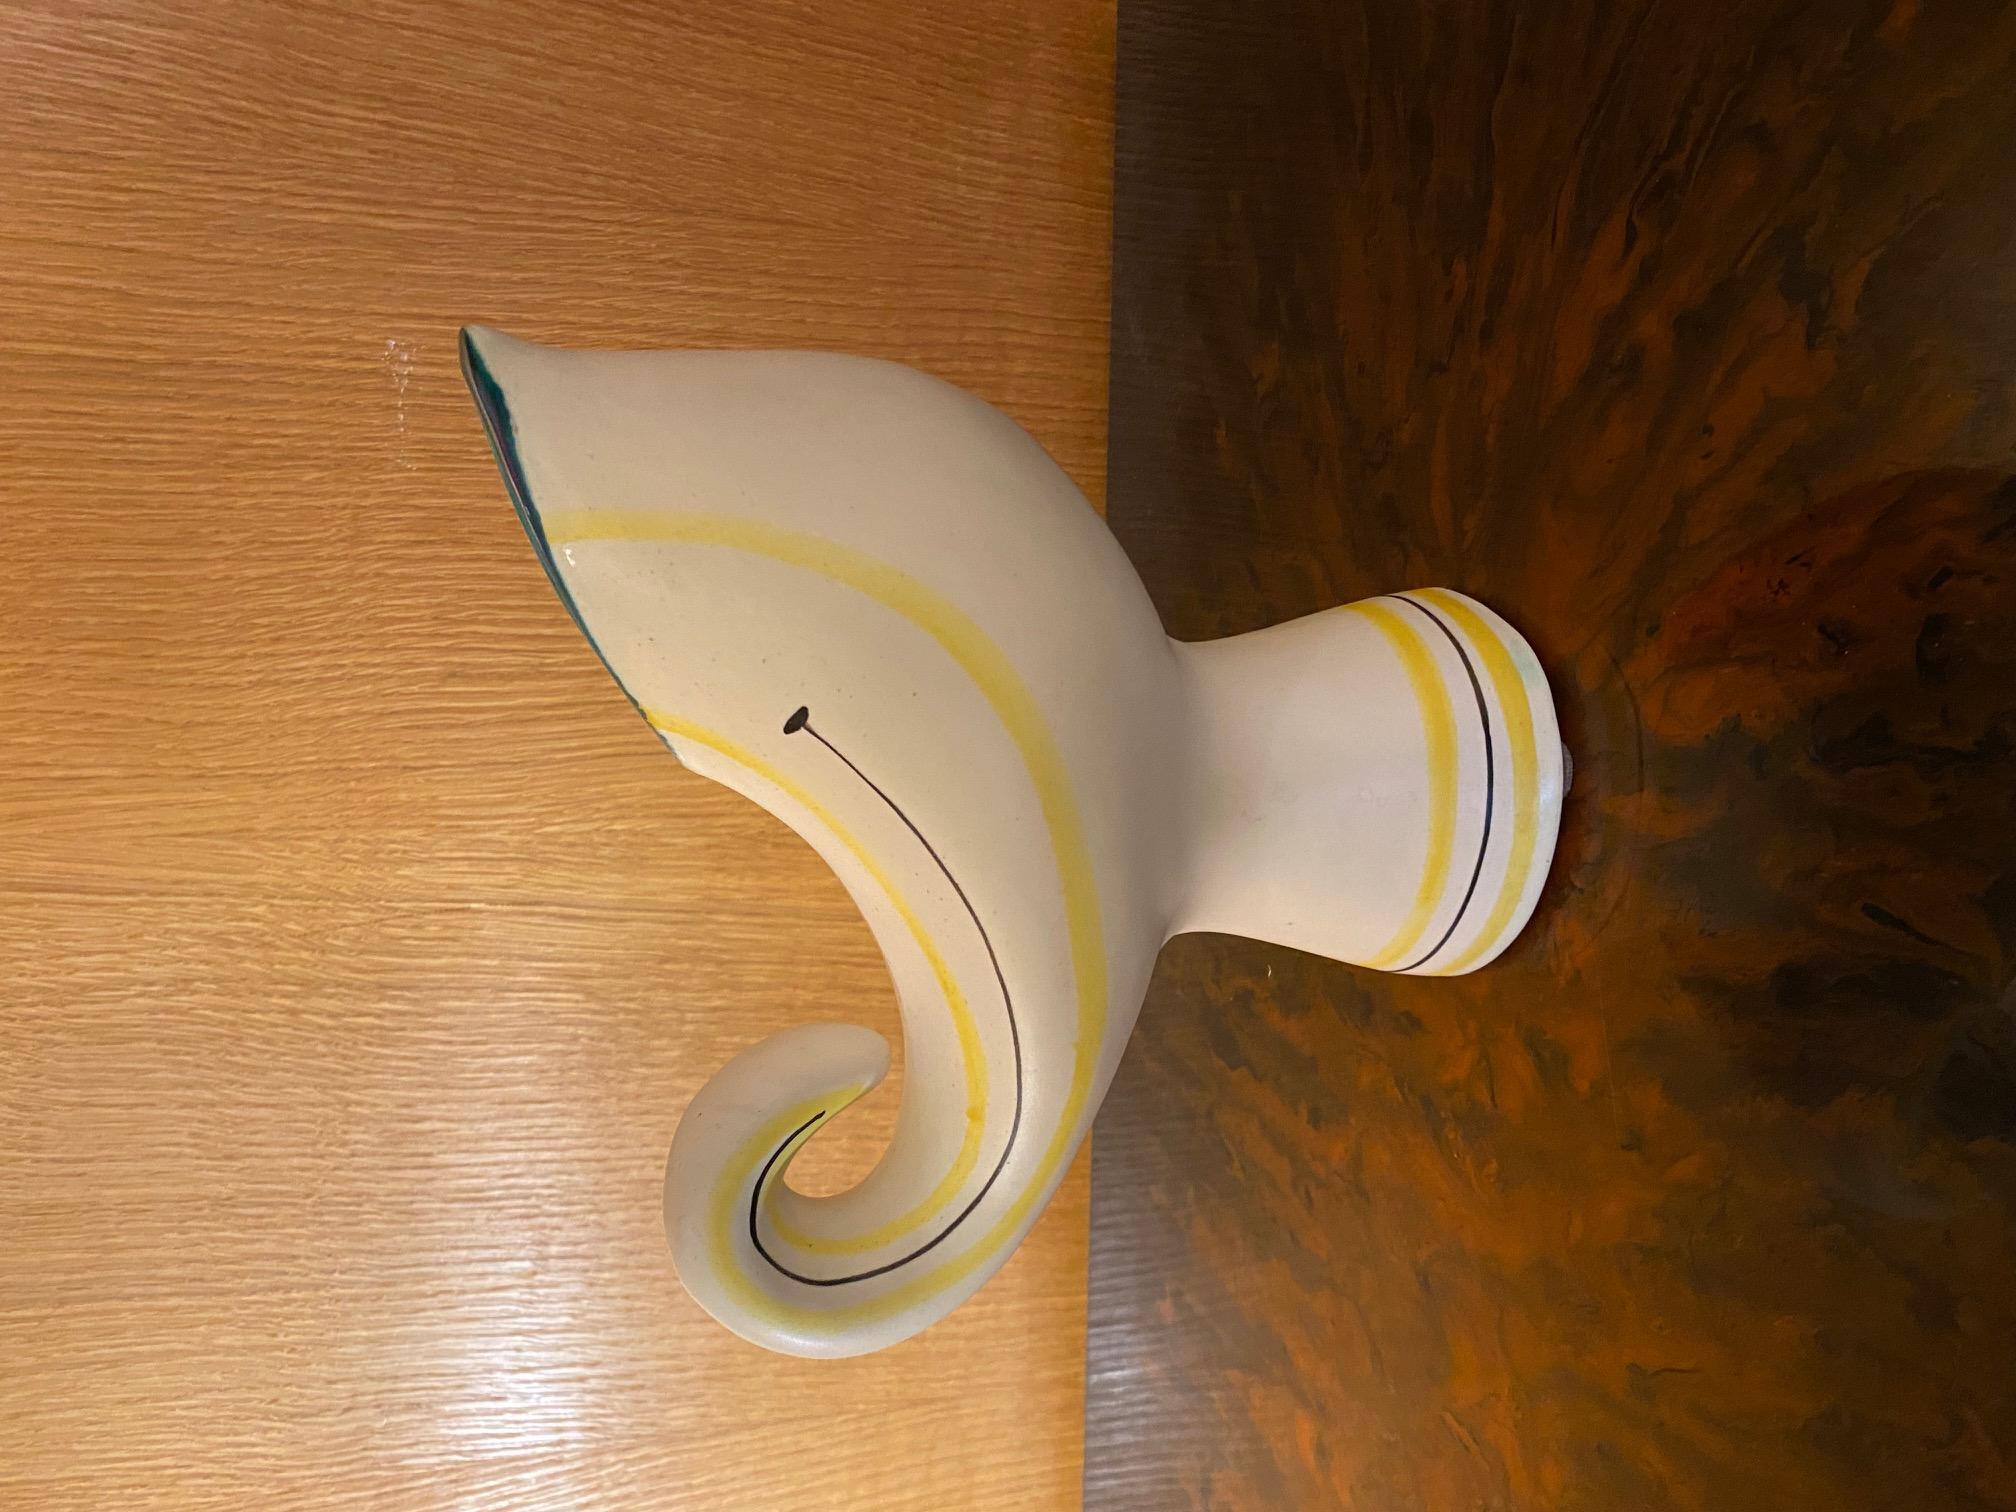 Keramikvase/ Krug „ Vogel“ von Roger Capron, Vallauris, Frankreich, 1960er Jahre
Unterzeichnet 